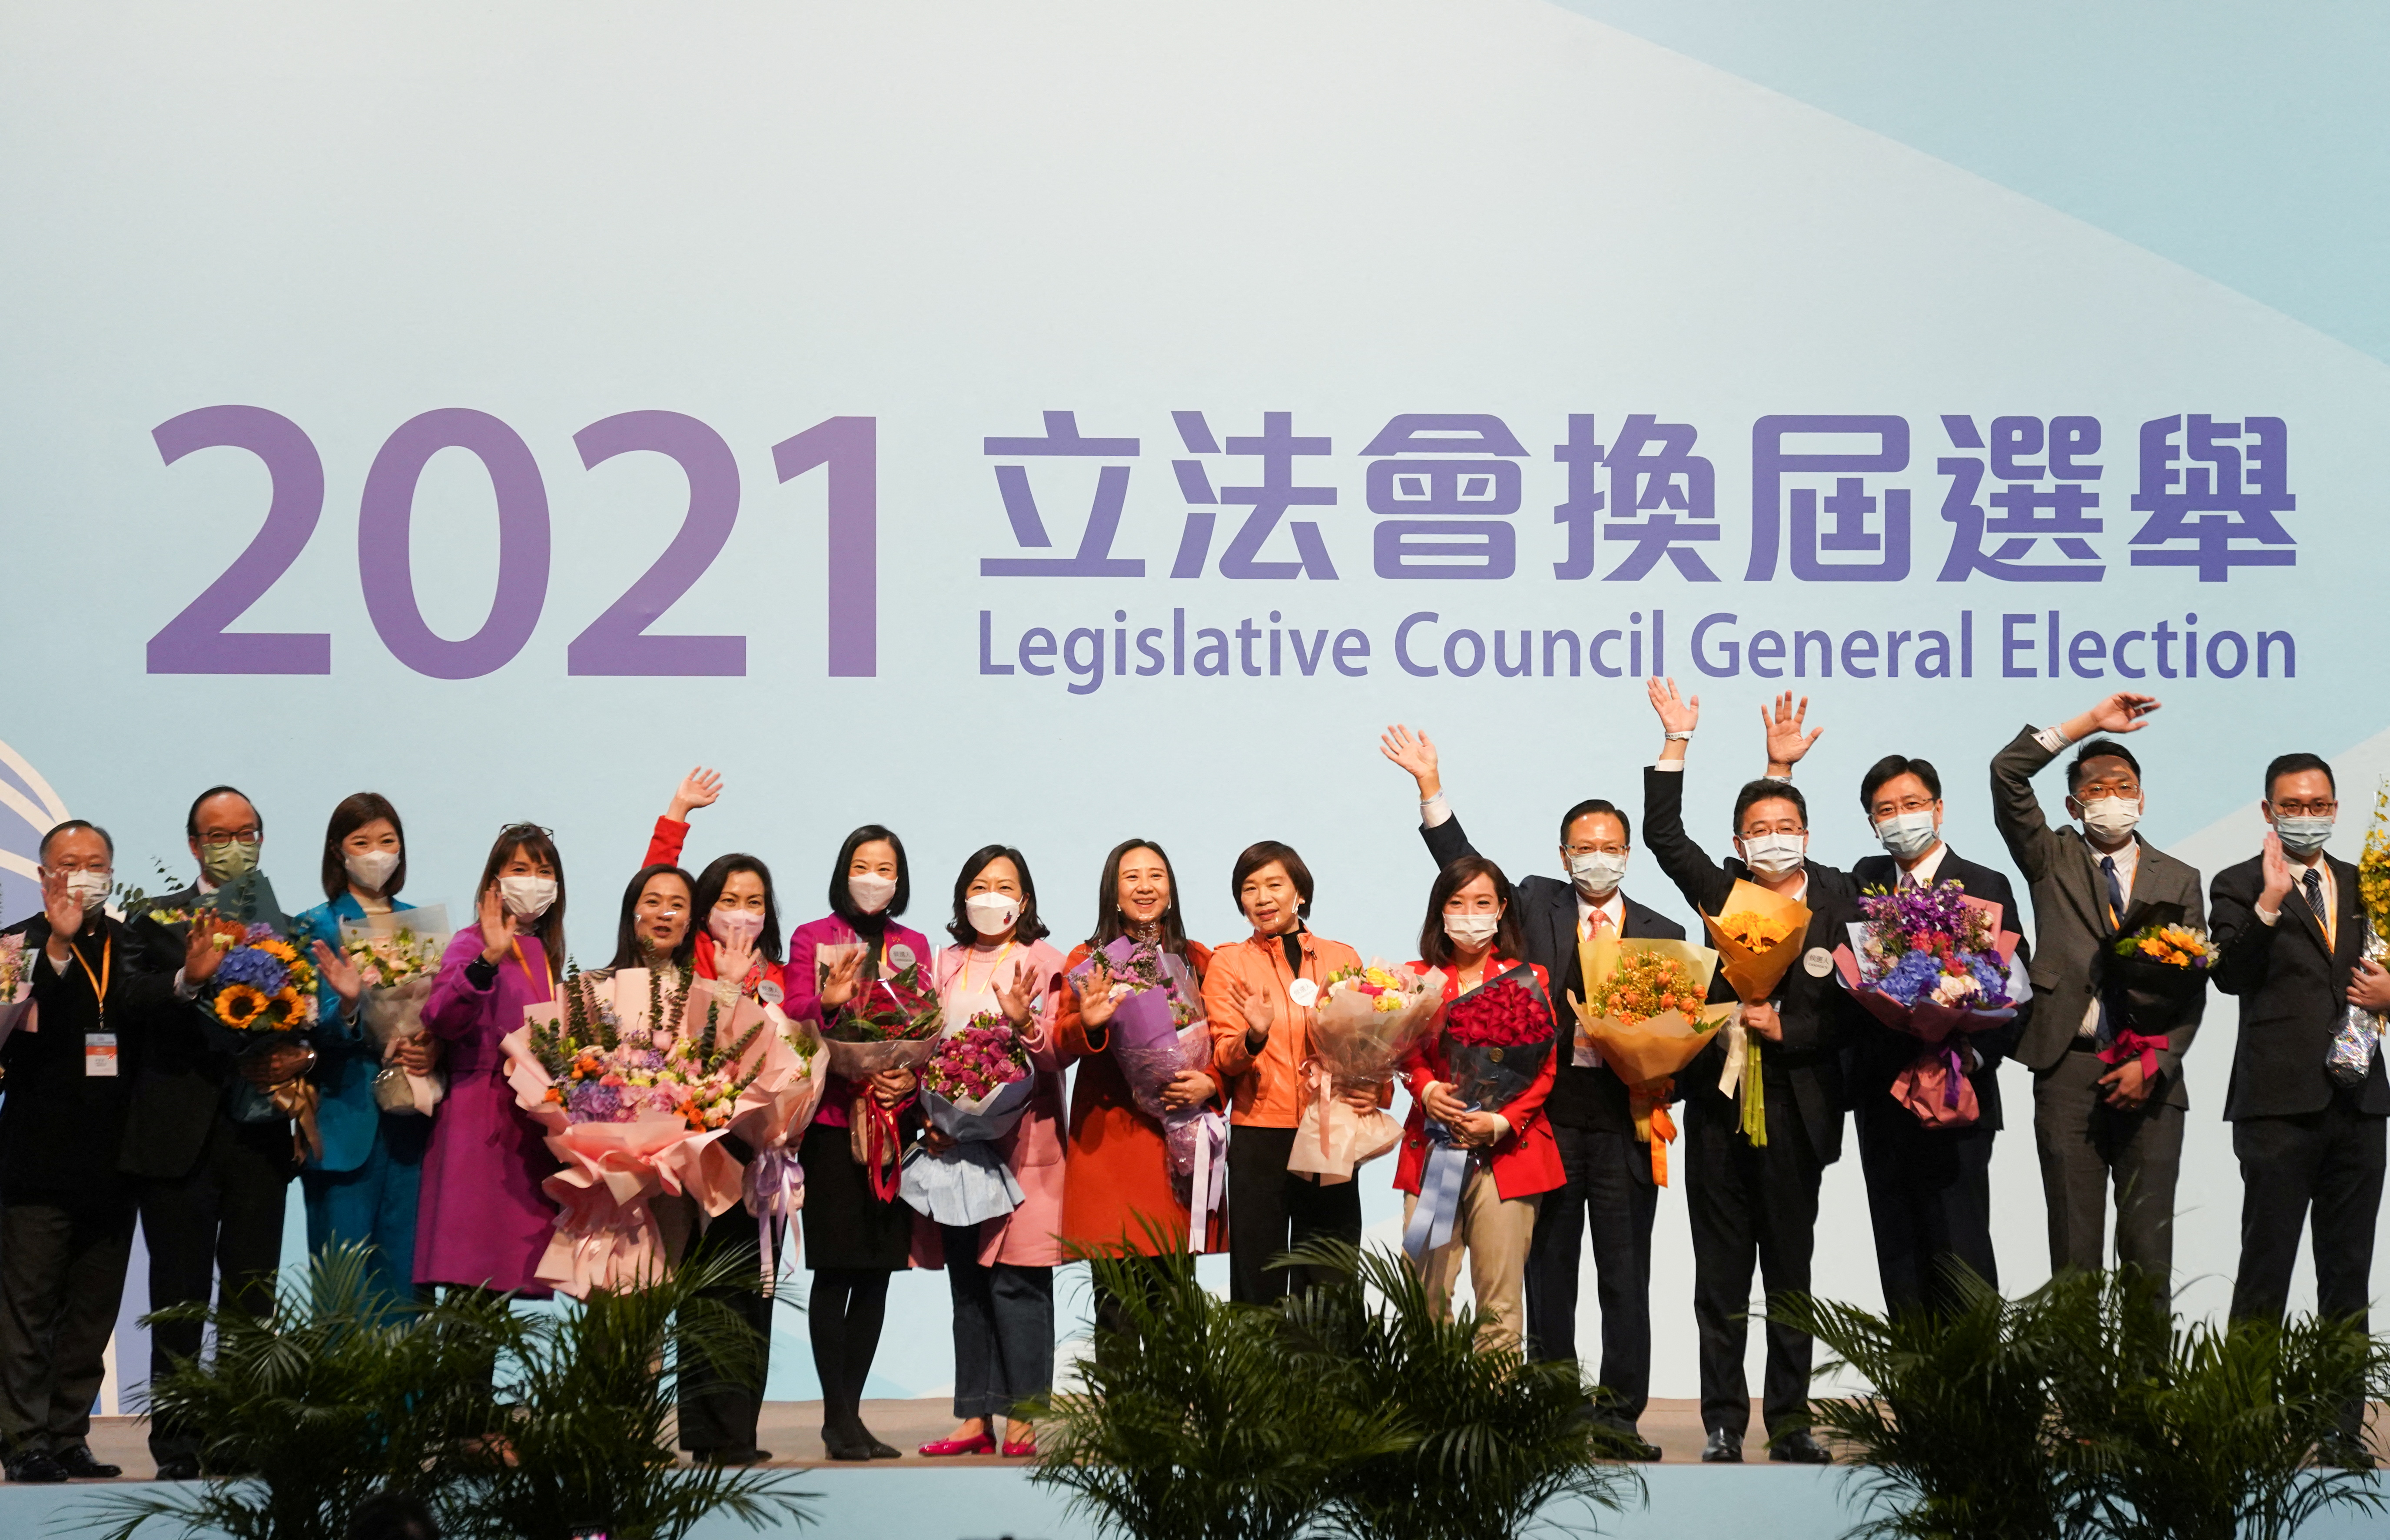 Hong Kong holds Legislative Council election